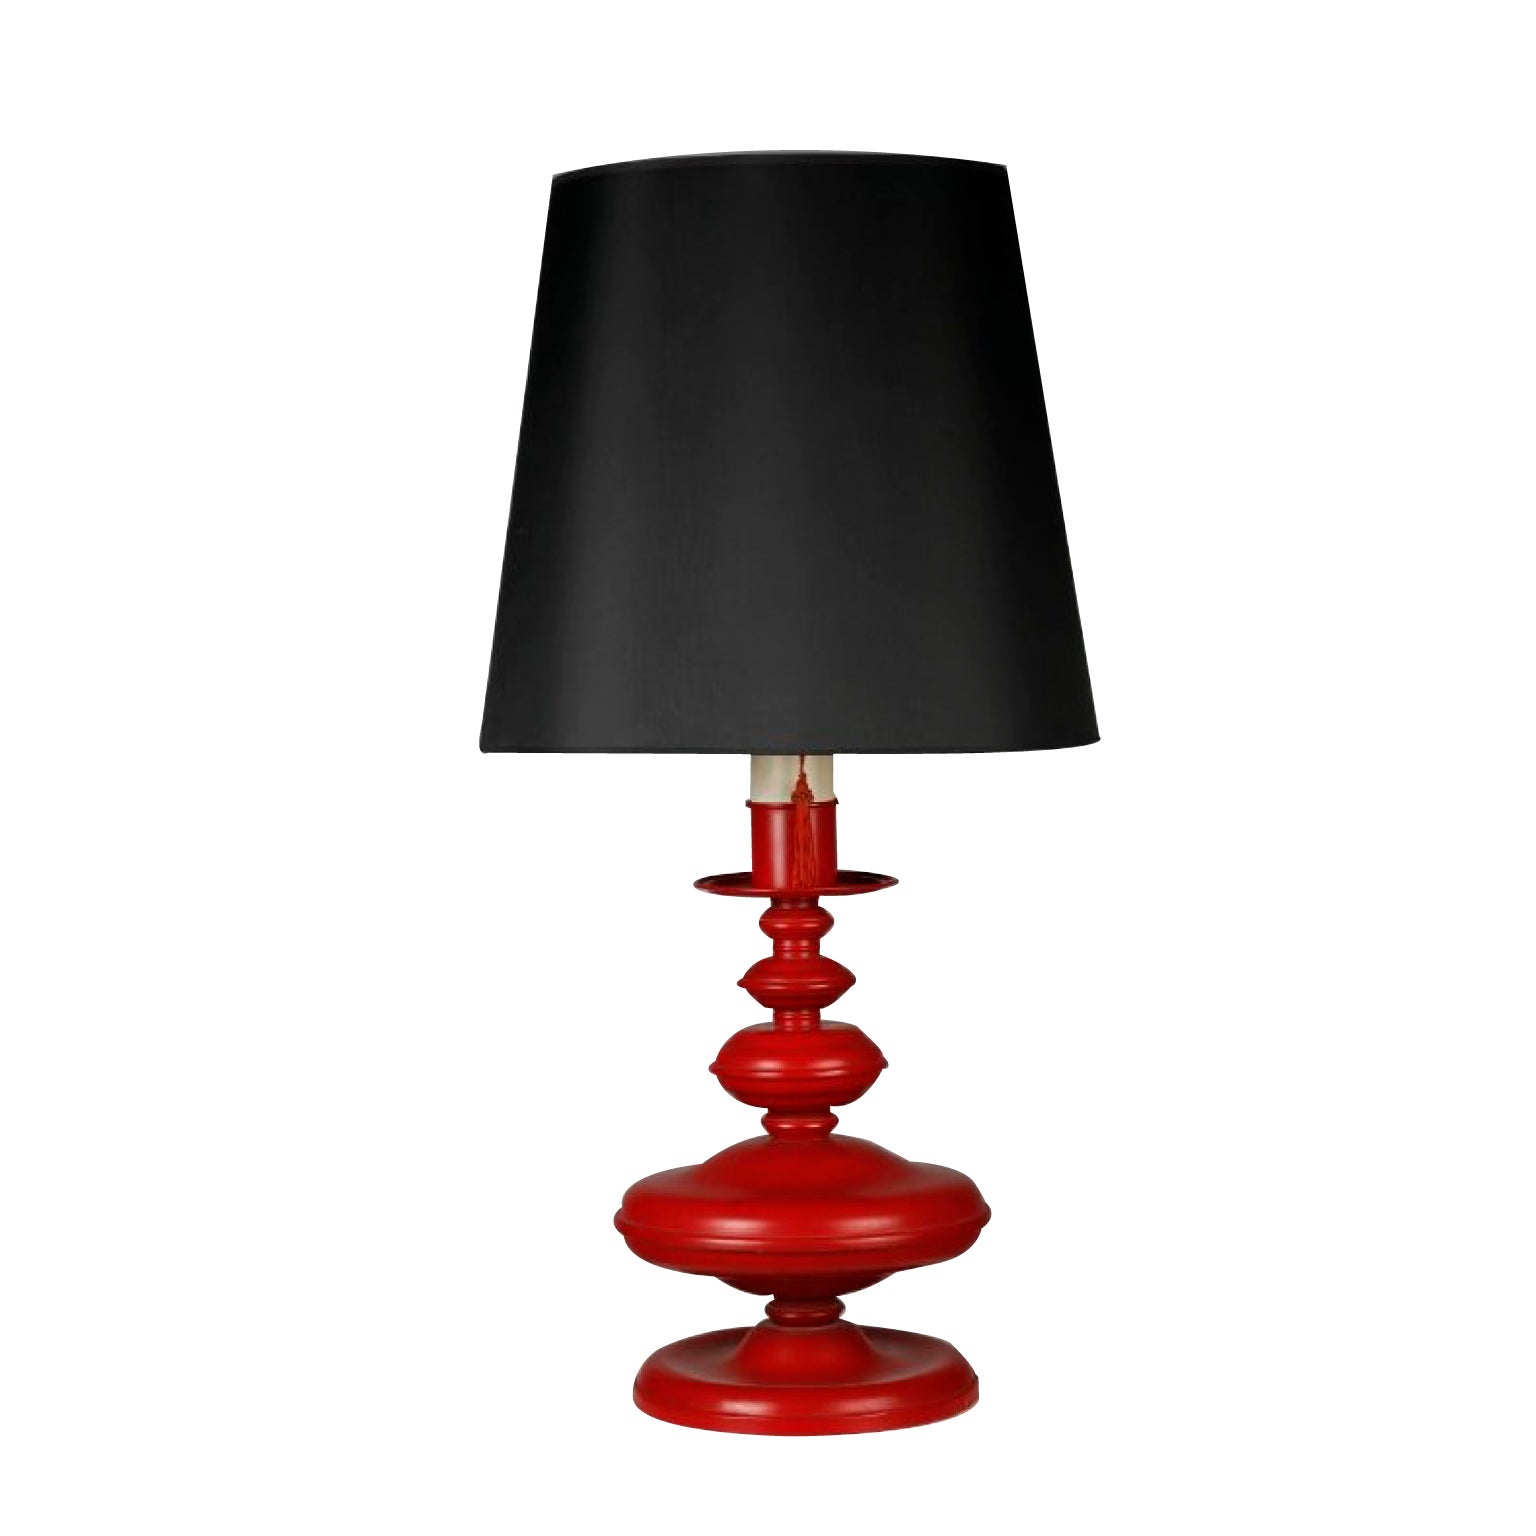 1950´s Table lamp designed by Pierre Lottier.